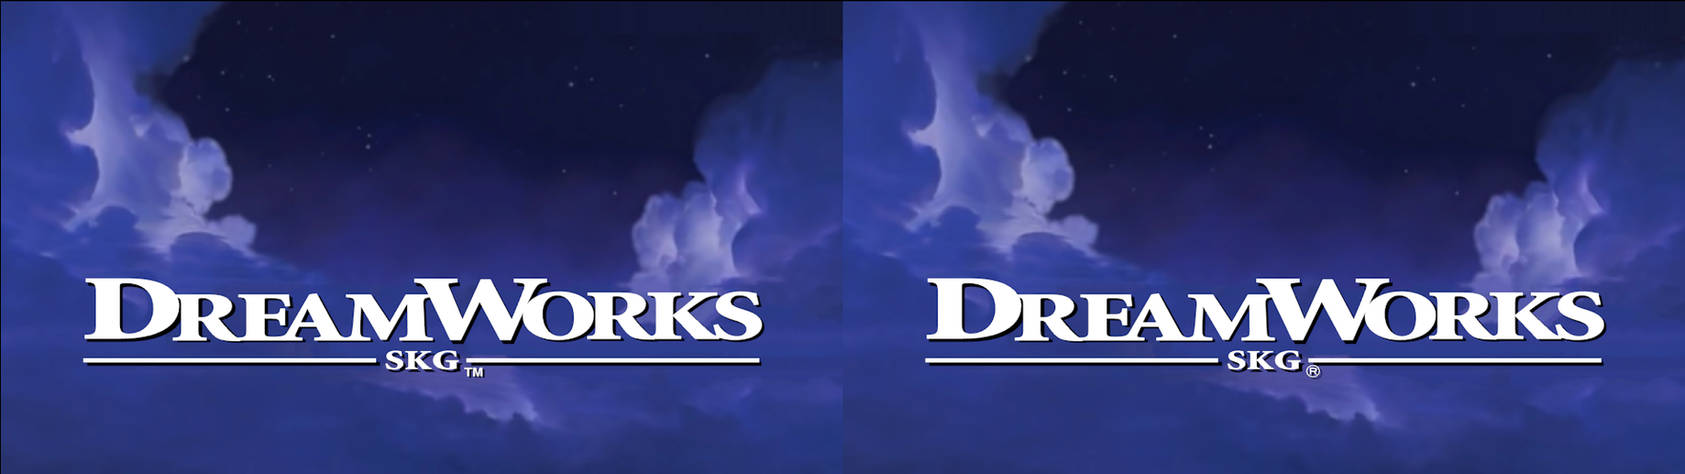 DreamWorks SKG 1997 logo remakes by logomanseva on DeviantArt